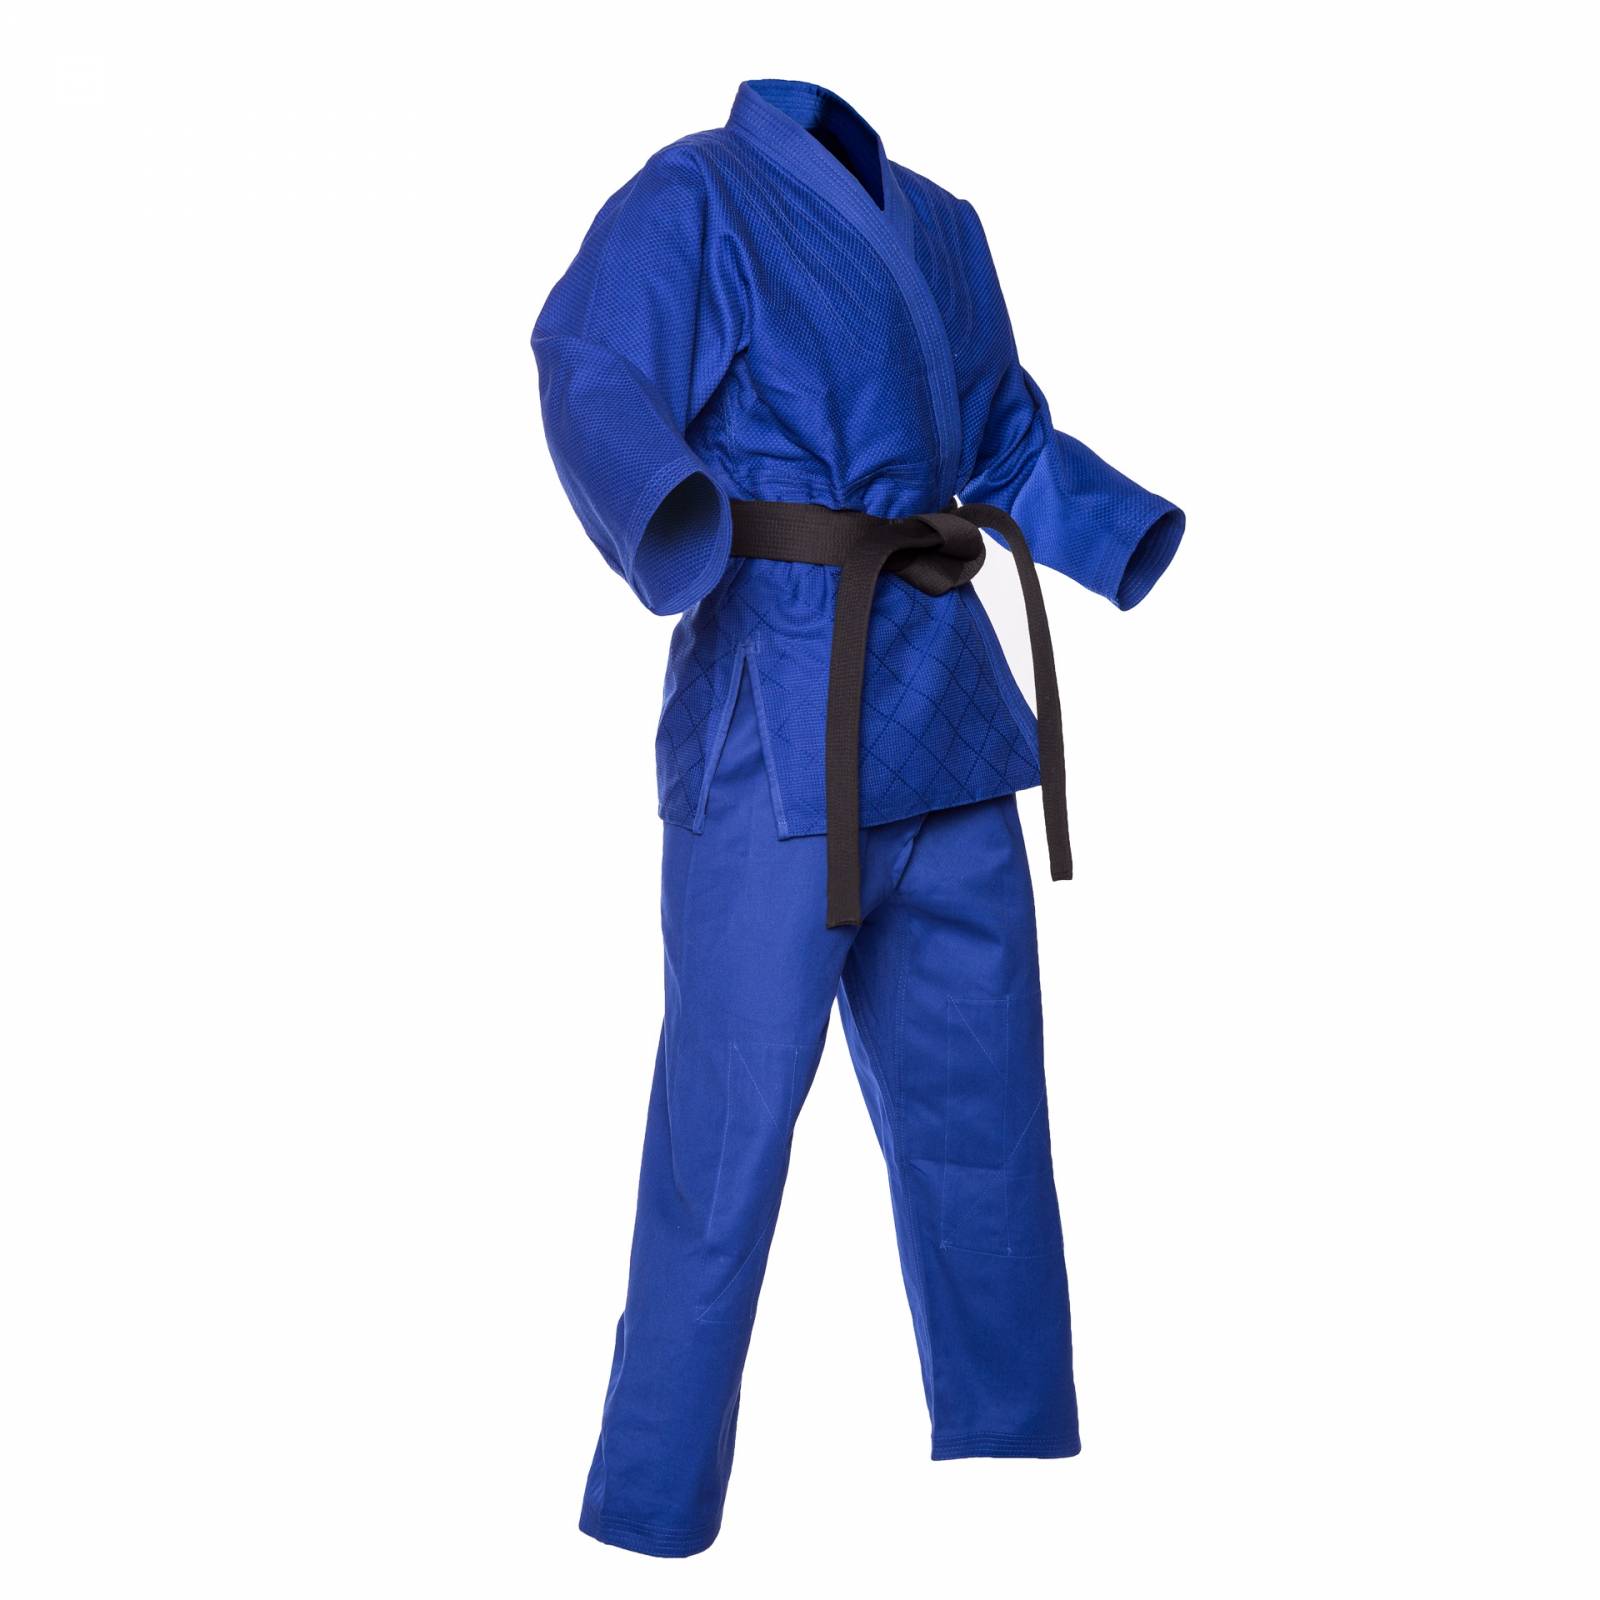 Korea Sport Judogui Color Azul Rey